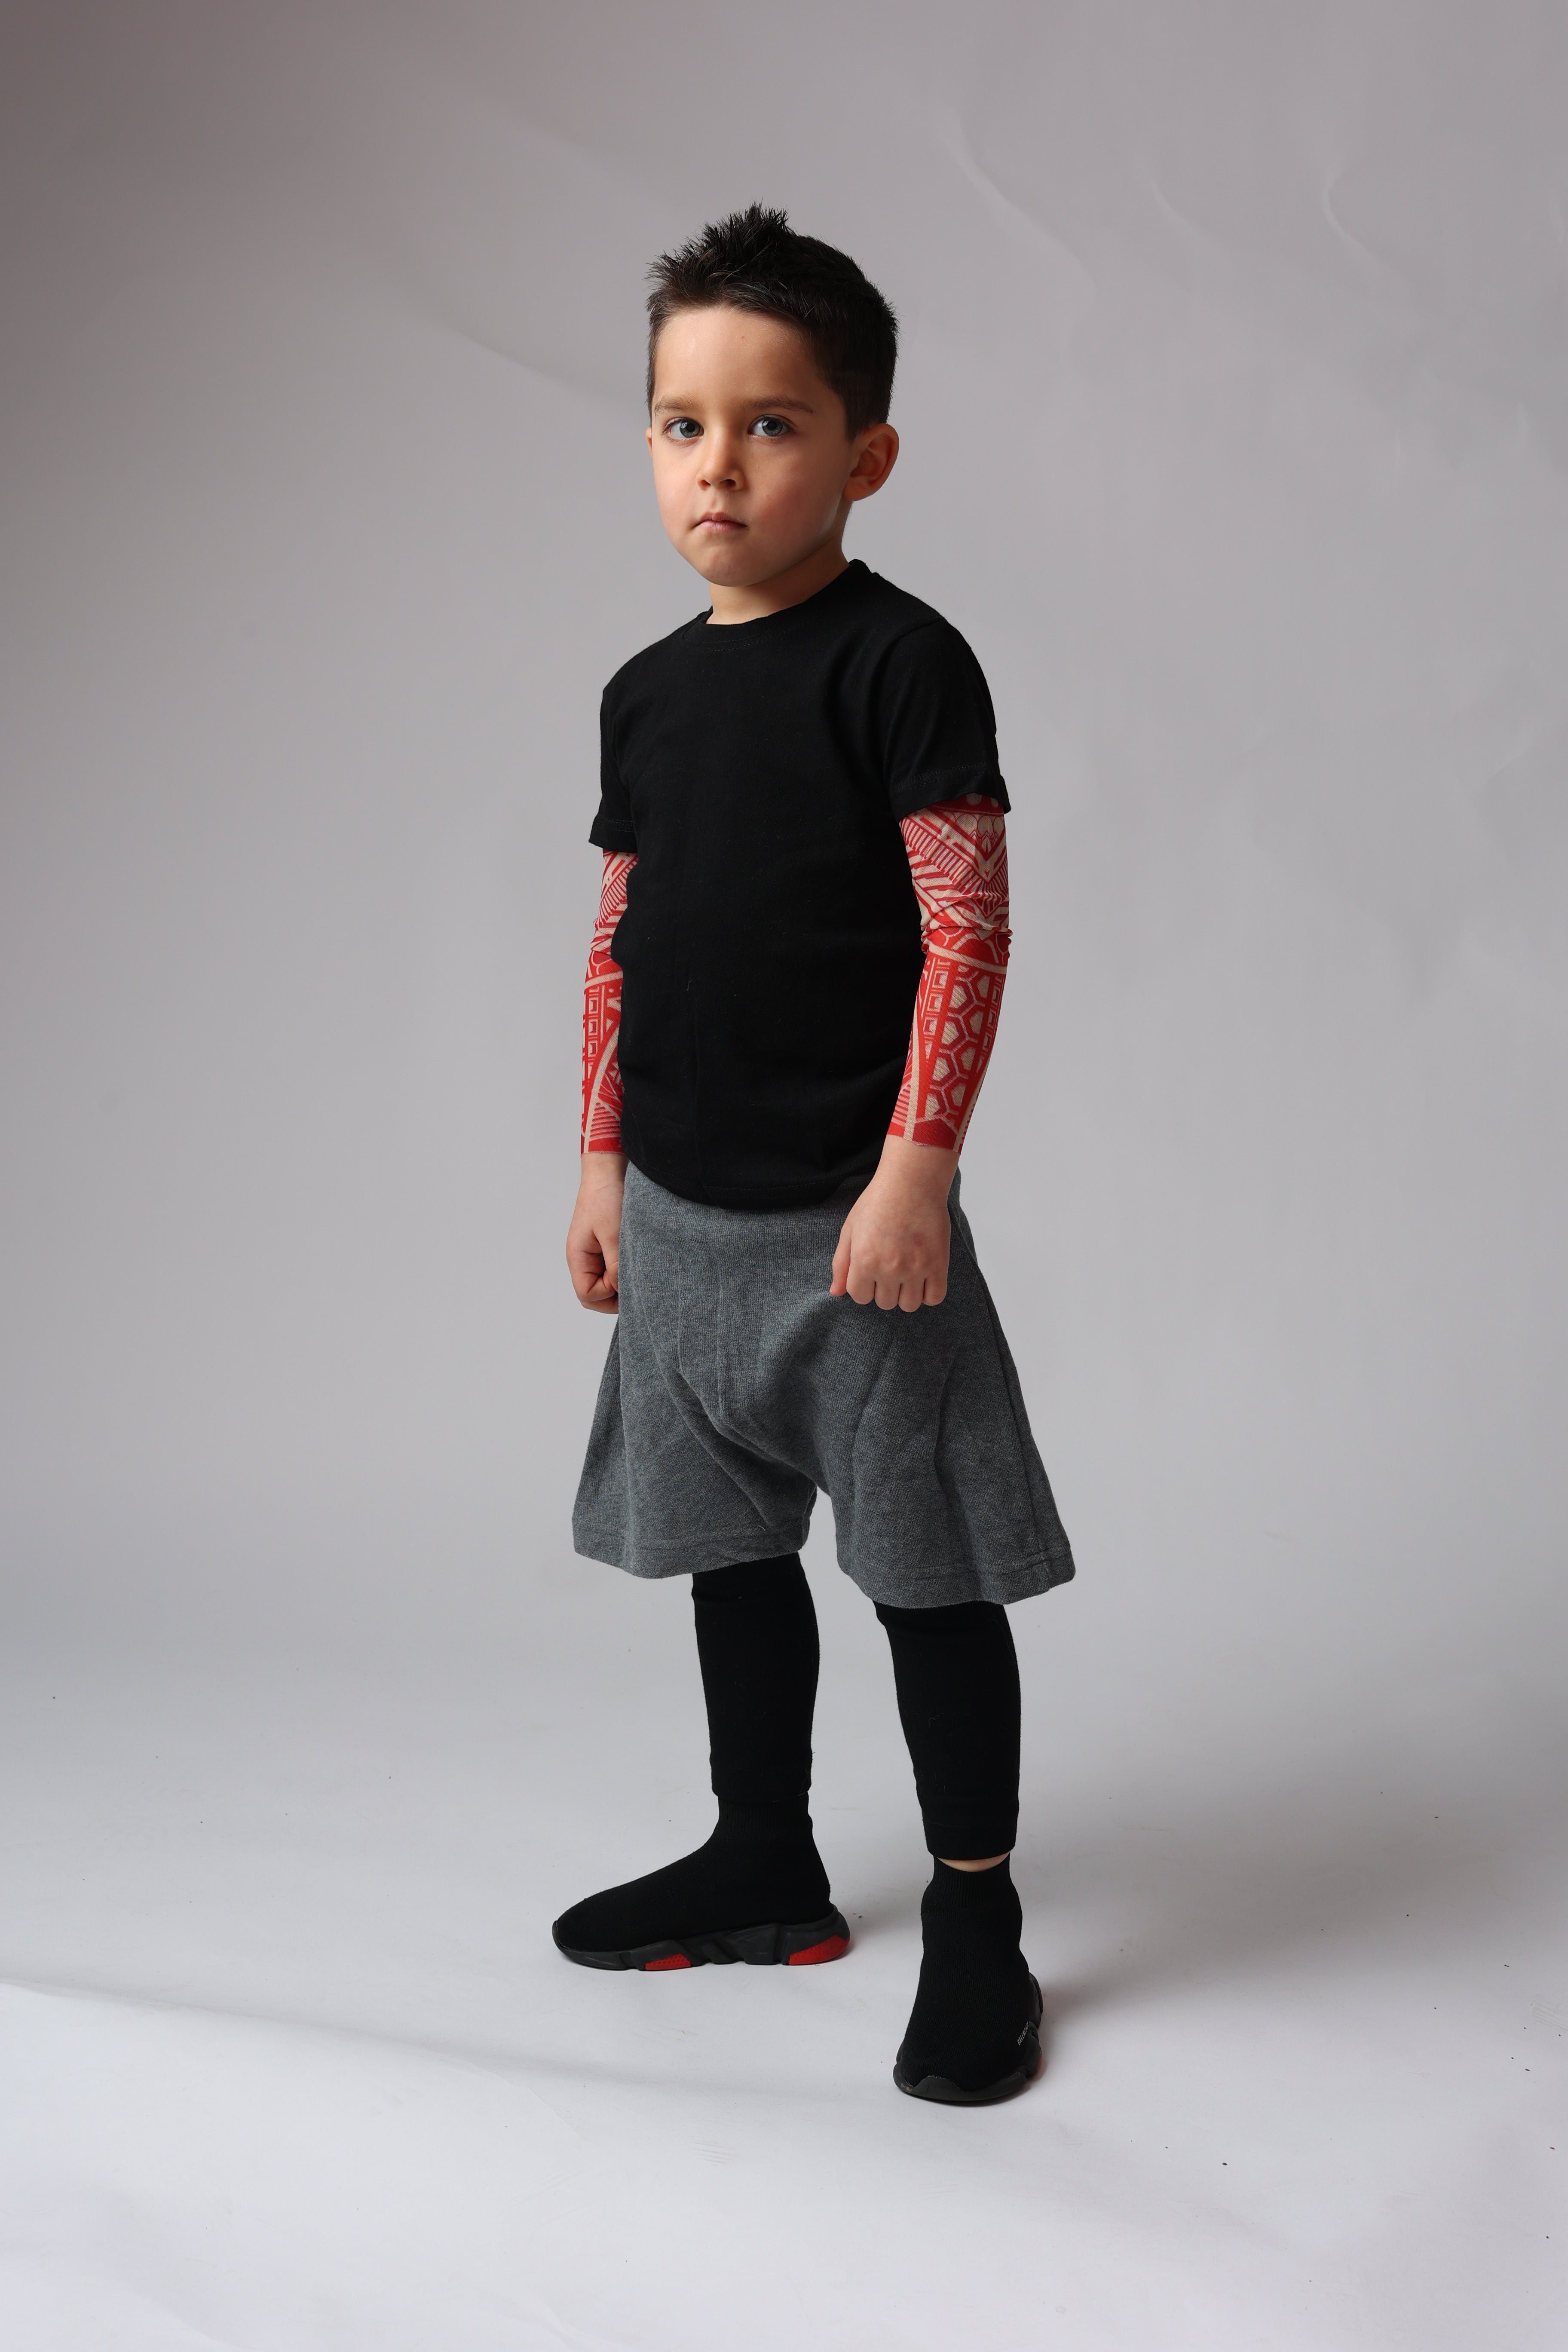 Tricou tatuaje Karin - unisex pentru copii si adulti - Alb / Negru / Gri / Rosu